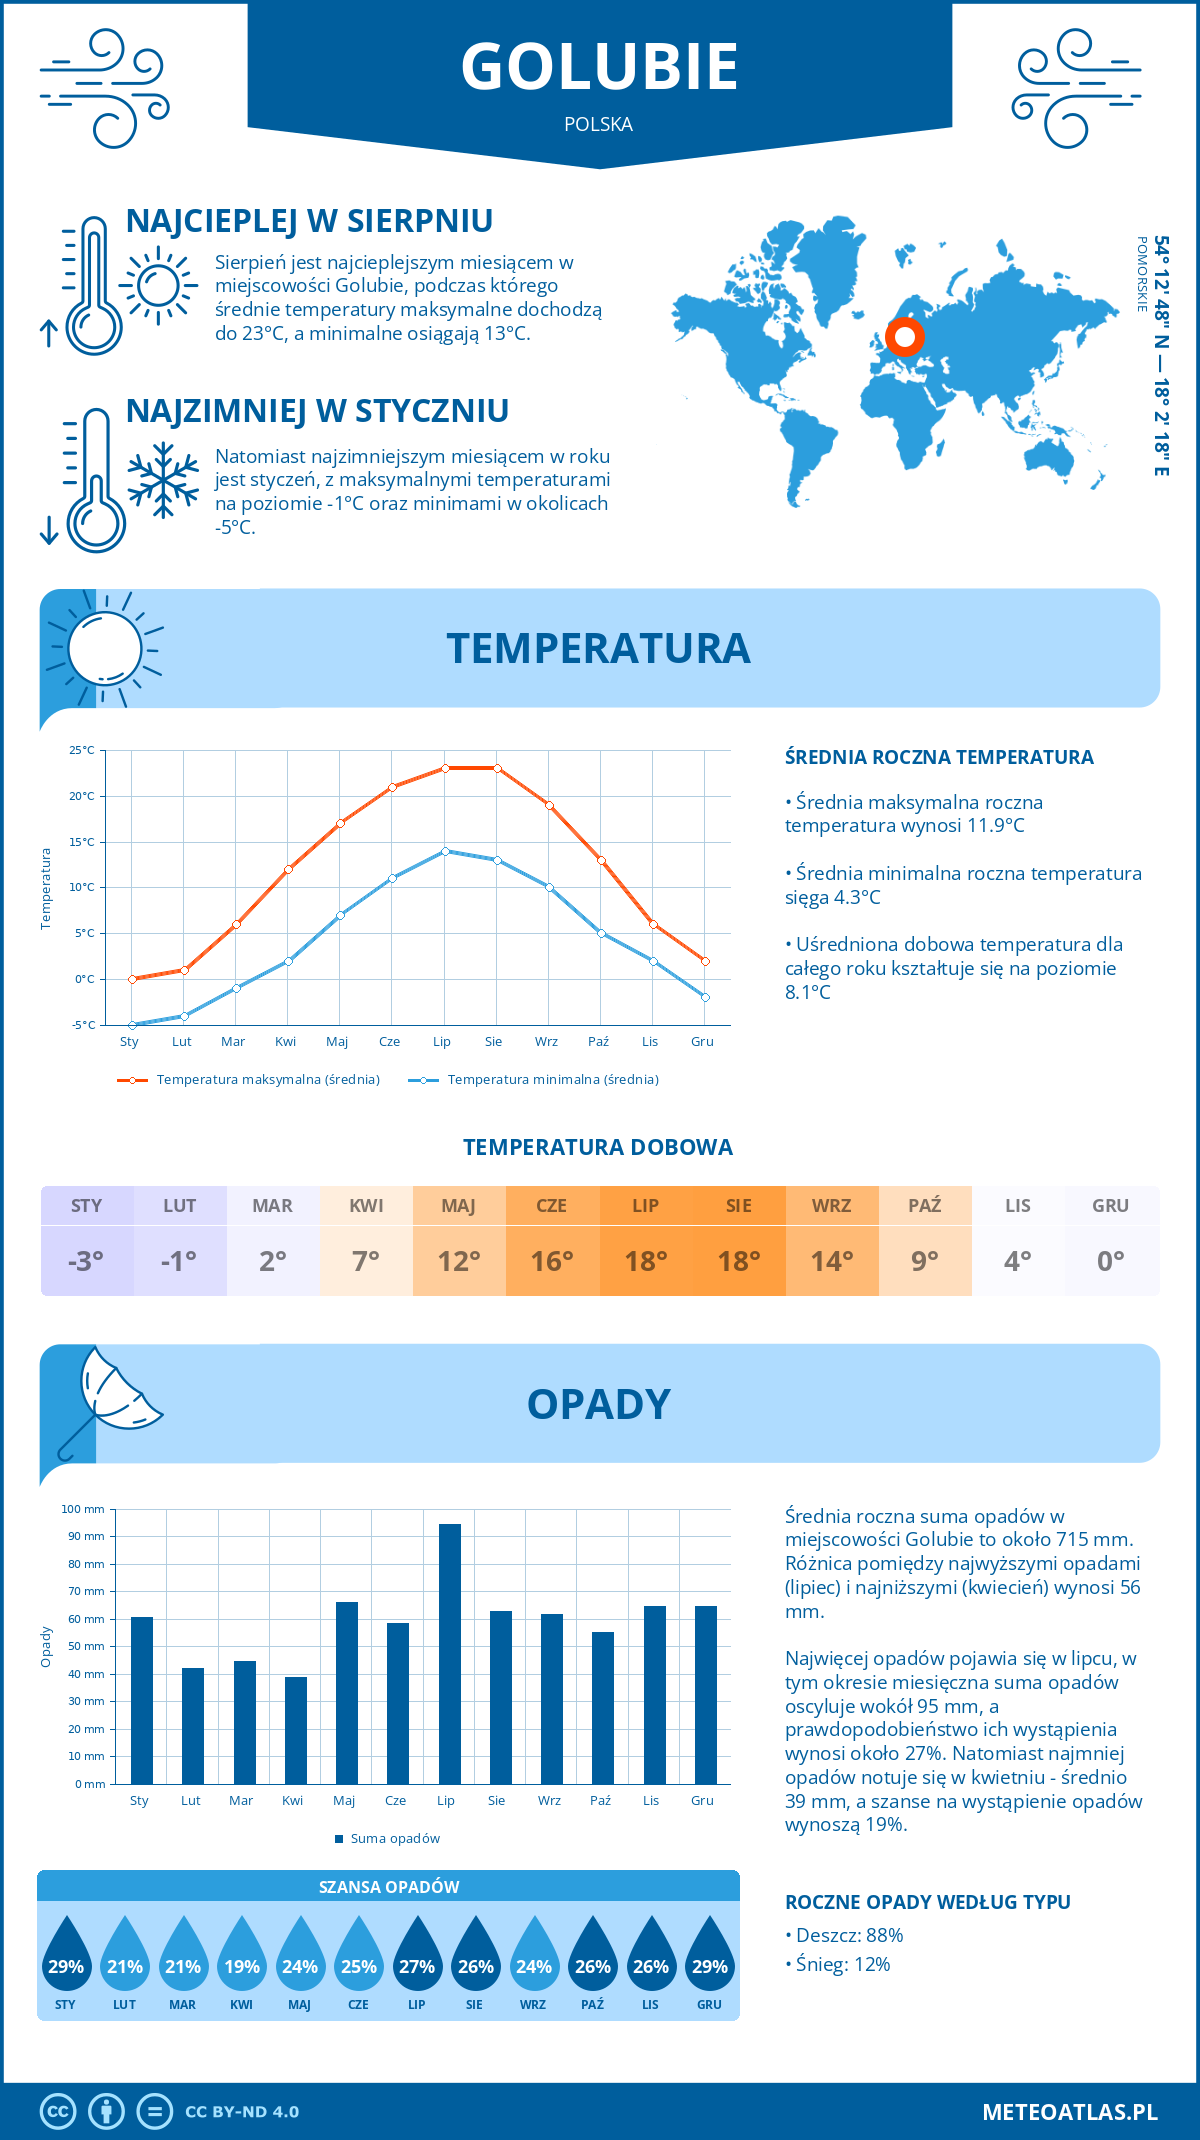 Pogoda Golubie (Polska). Temperatura oraz opady.